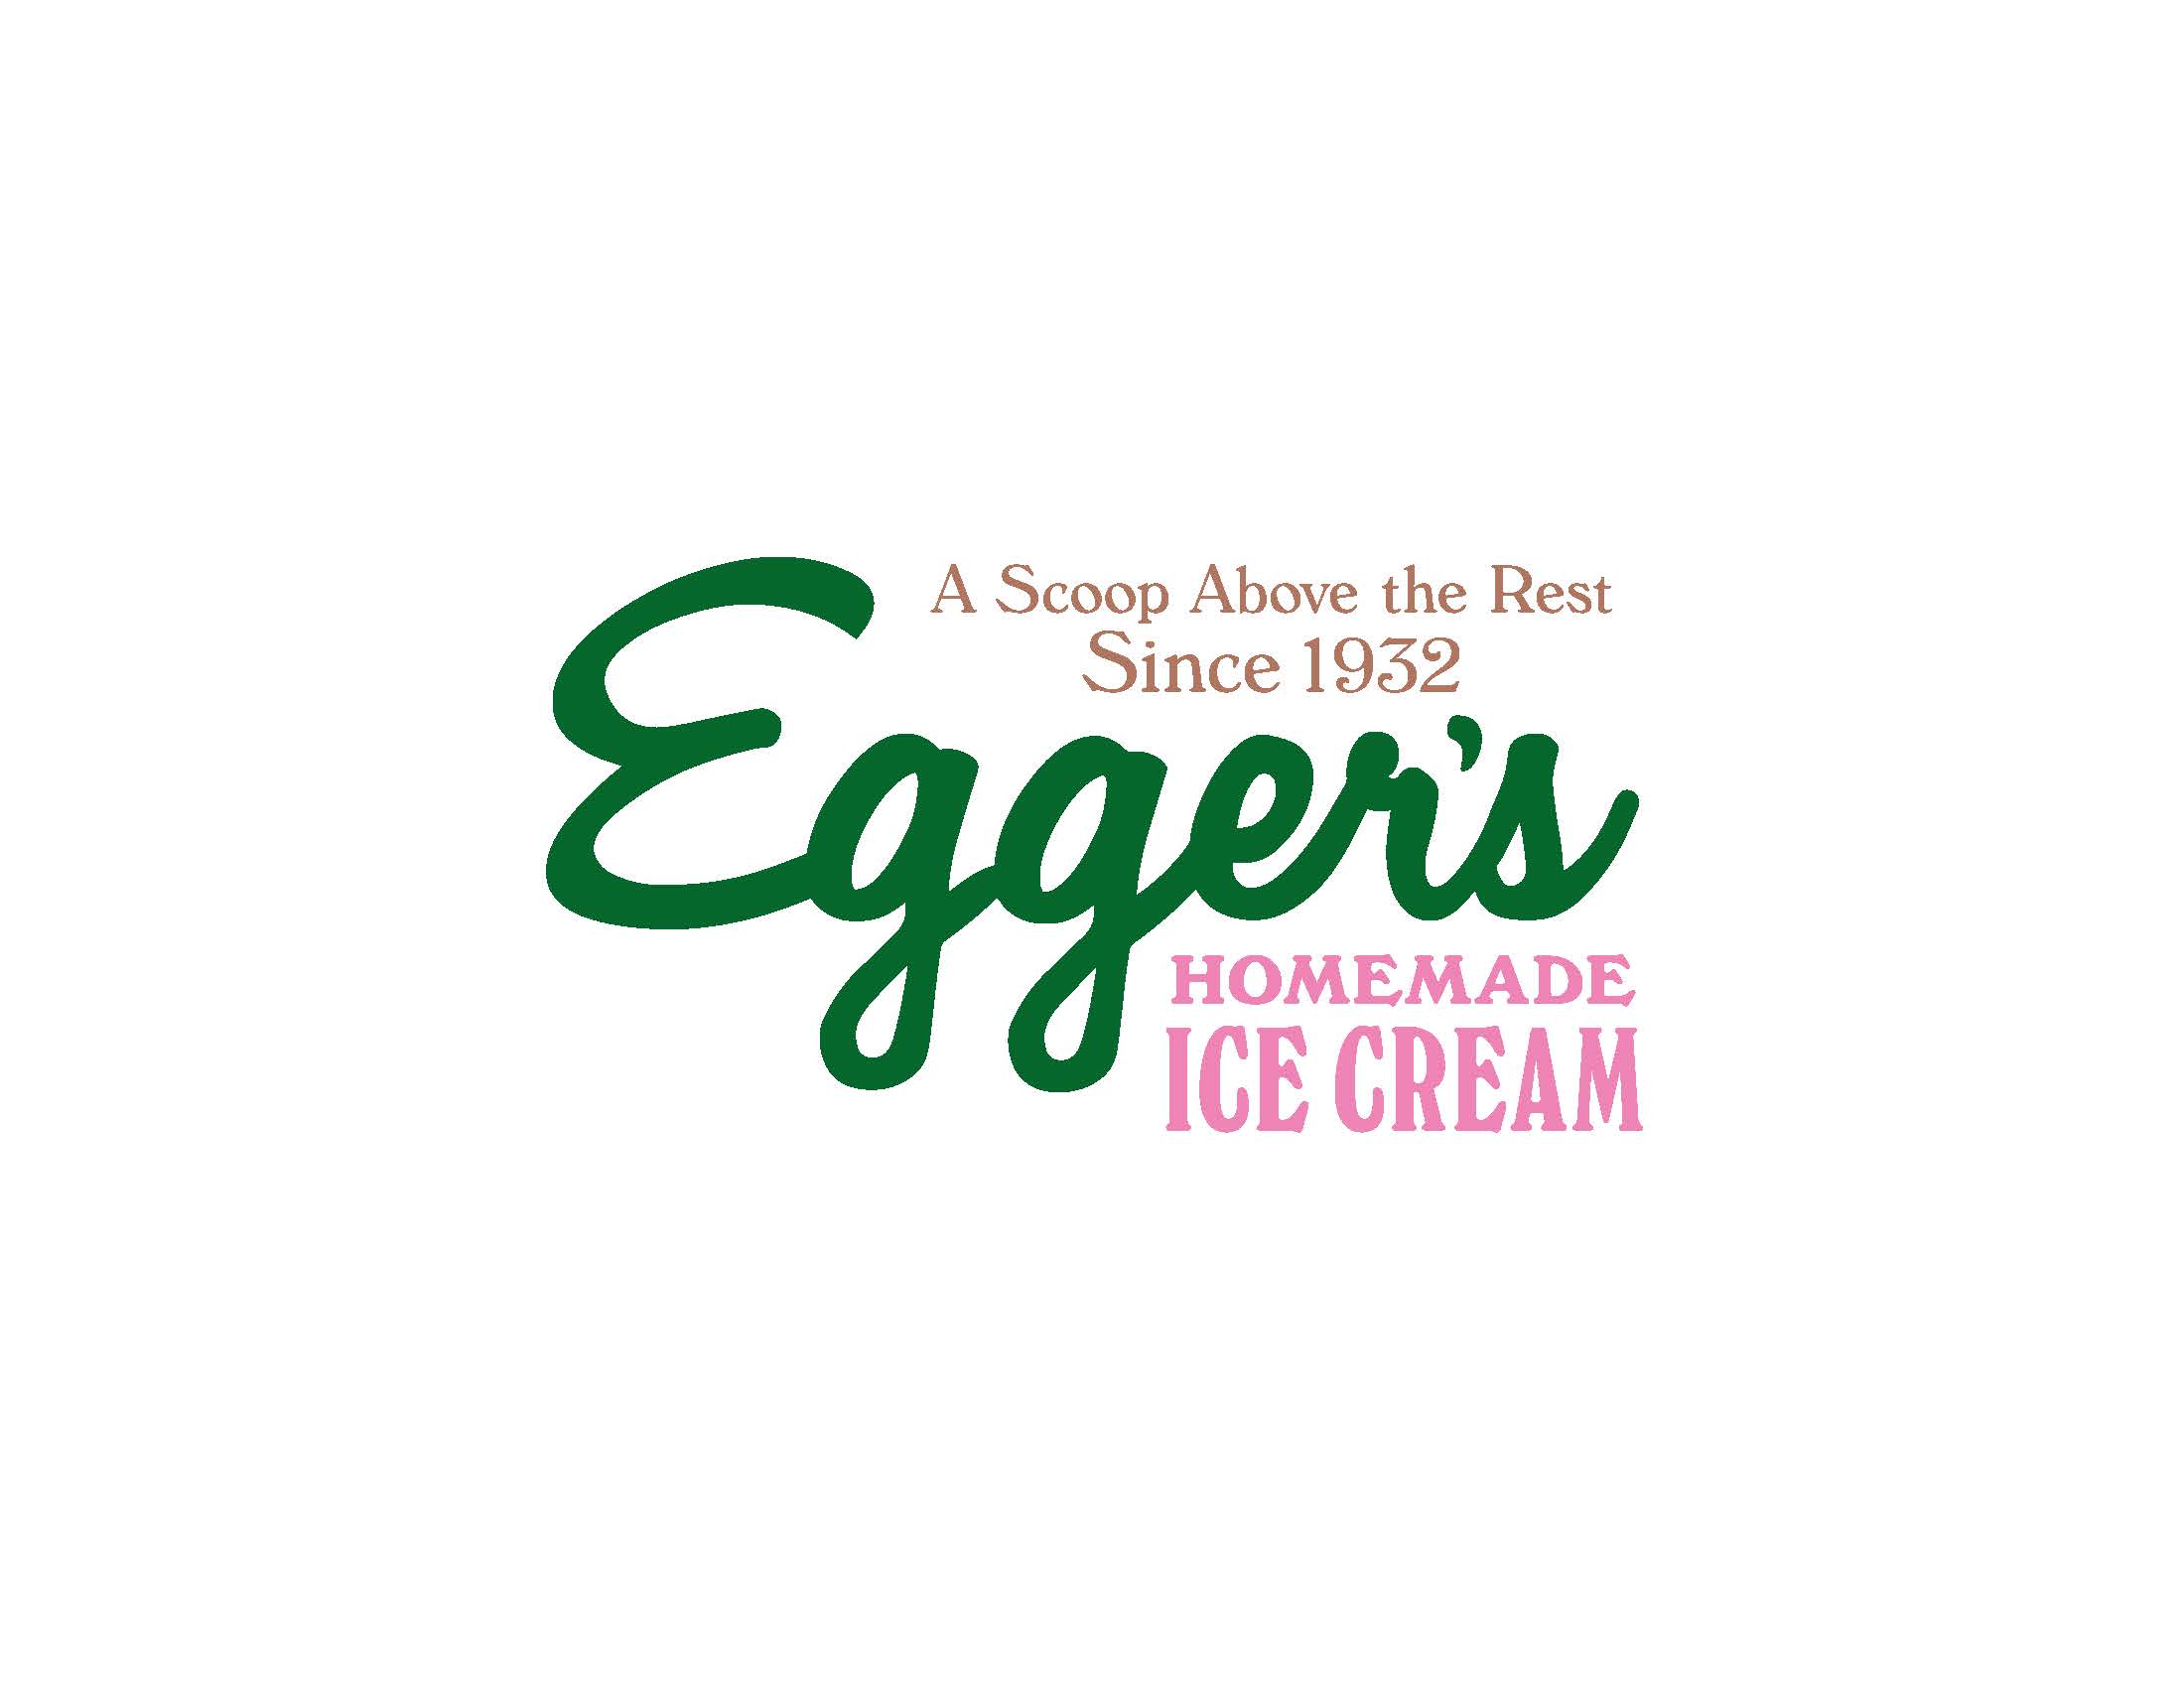 Eggers Ice Cream